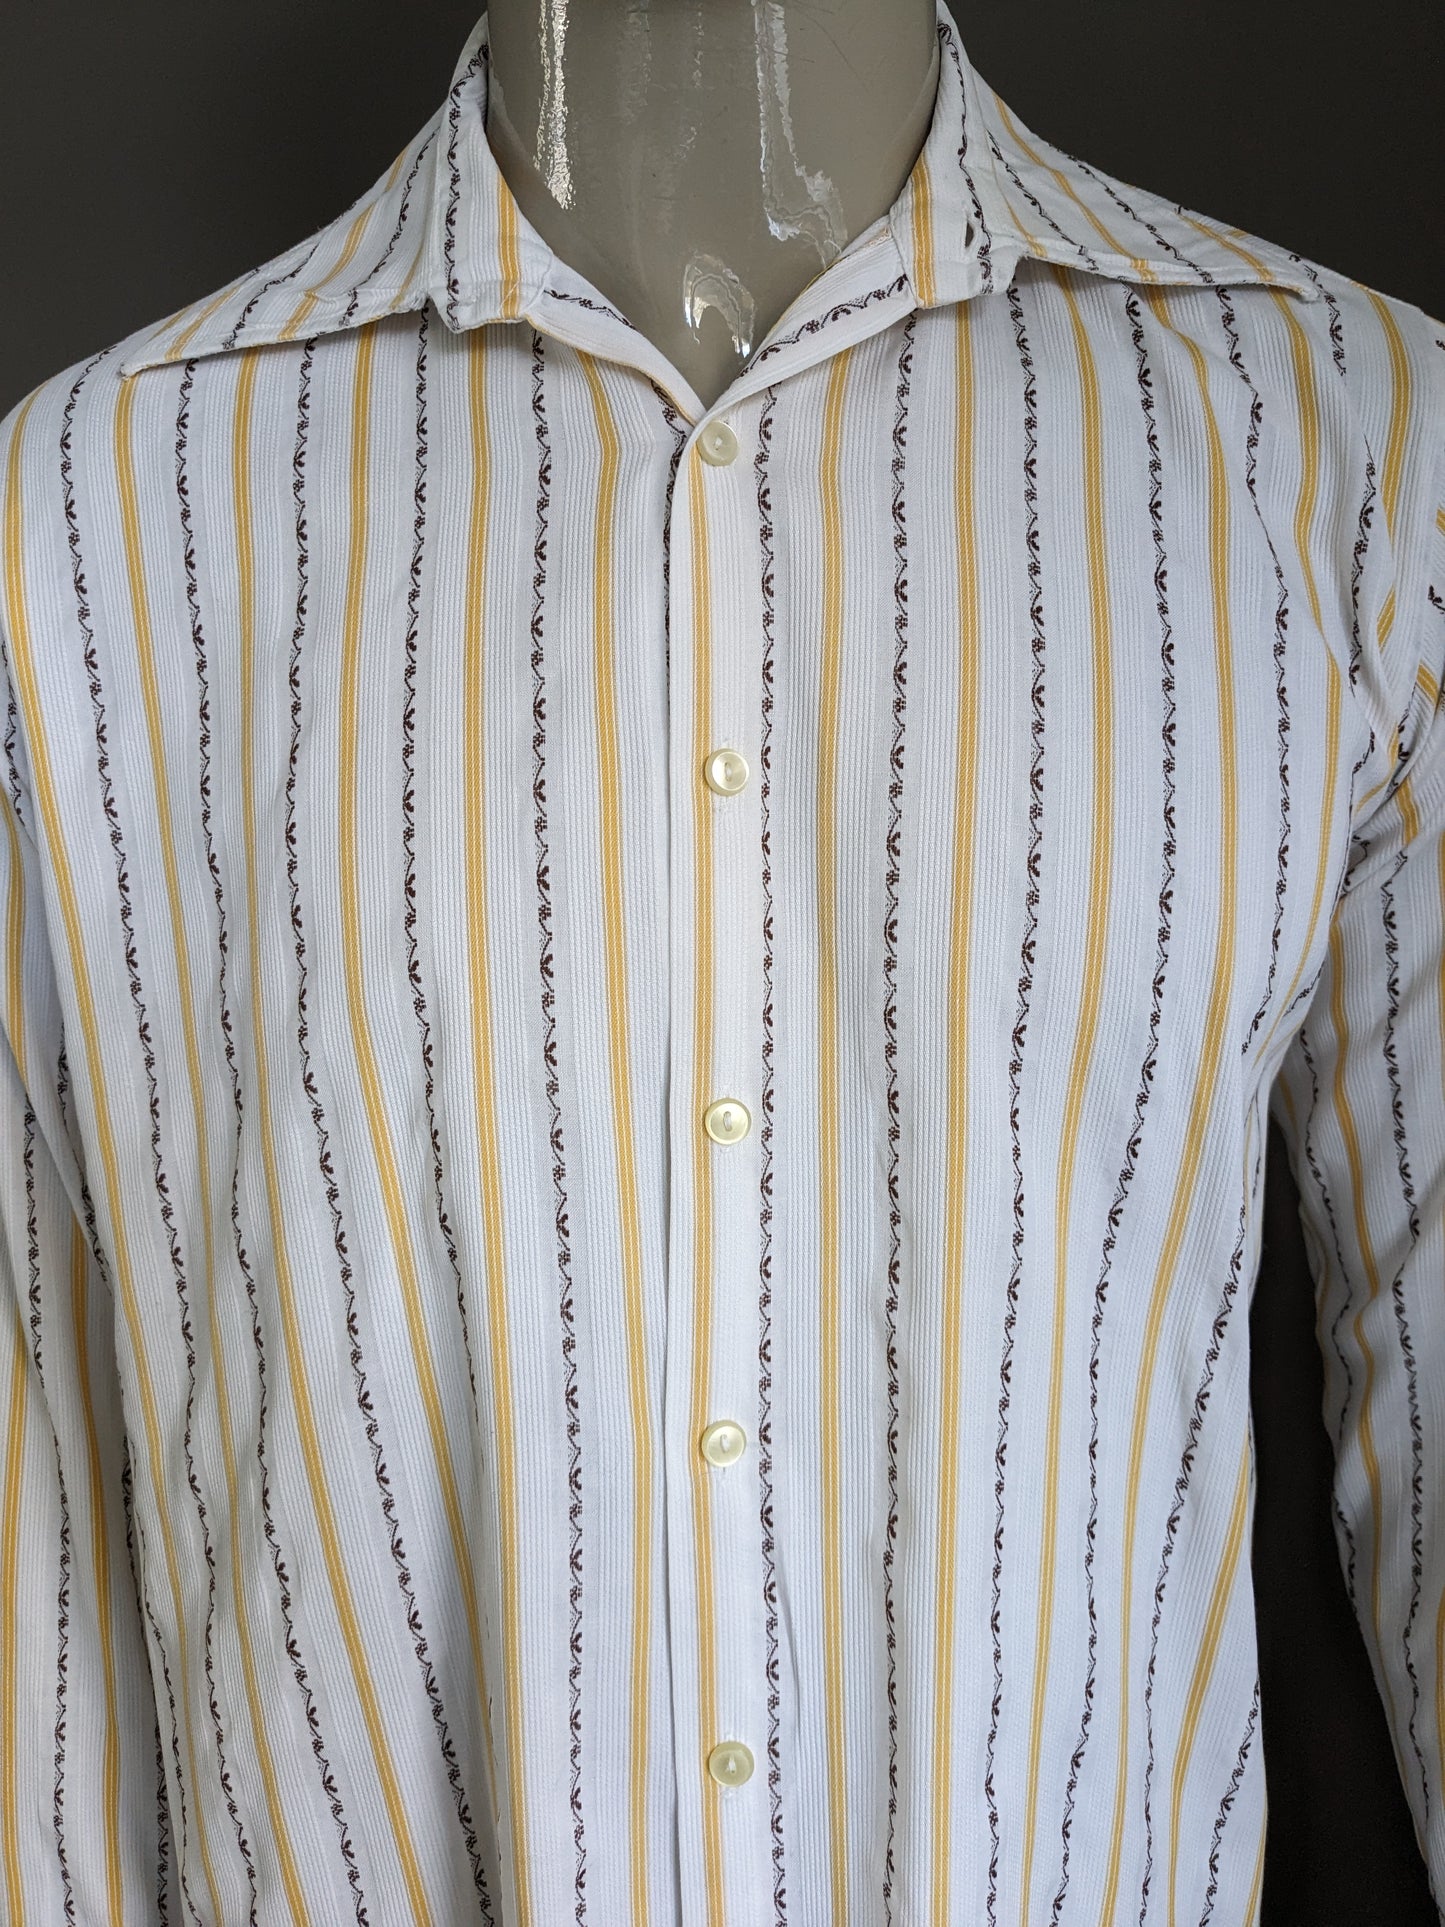 Chemise vintage des années 70 avec collier ponctuel. Brun jaune rayé. Taille L.